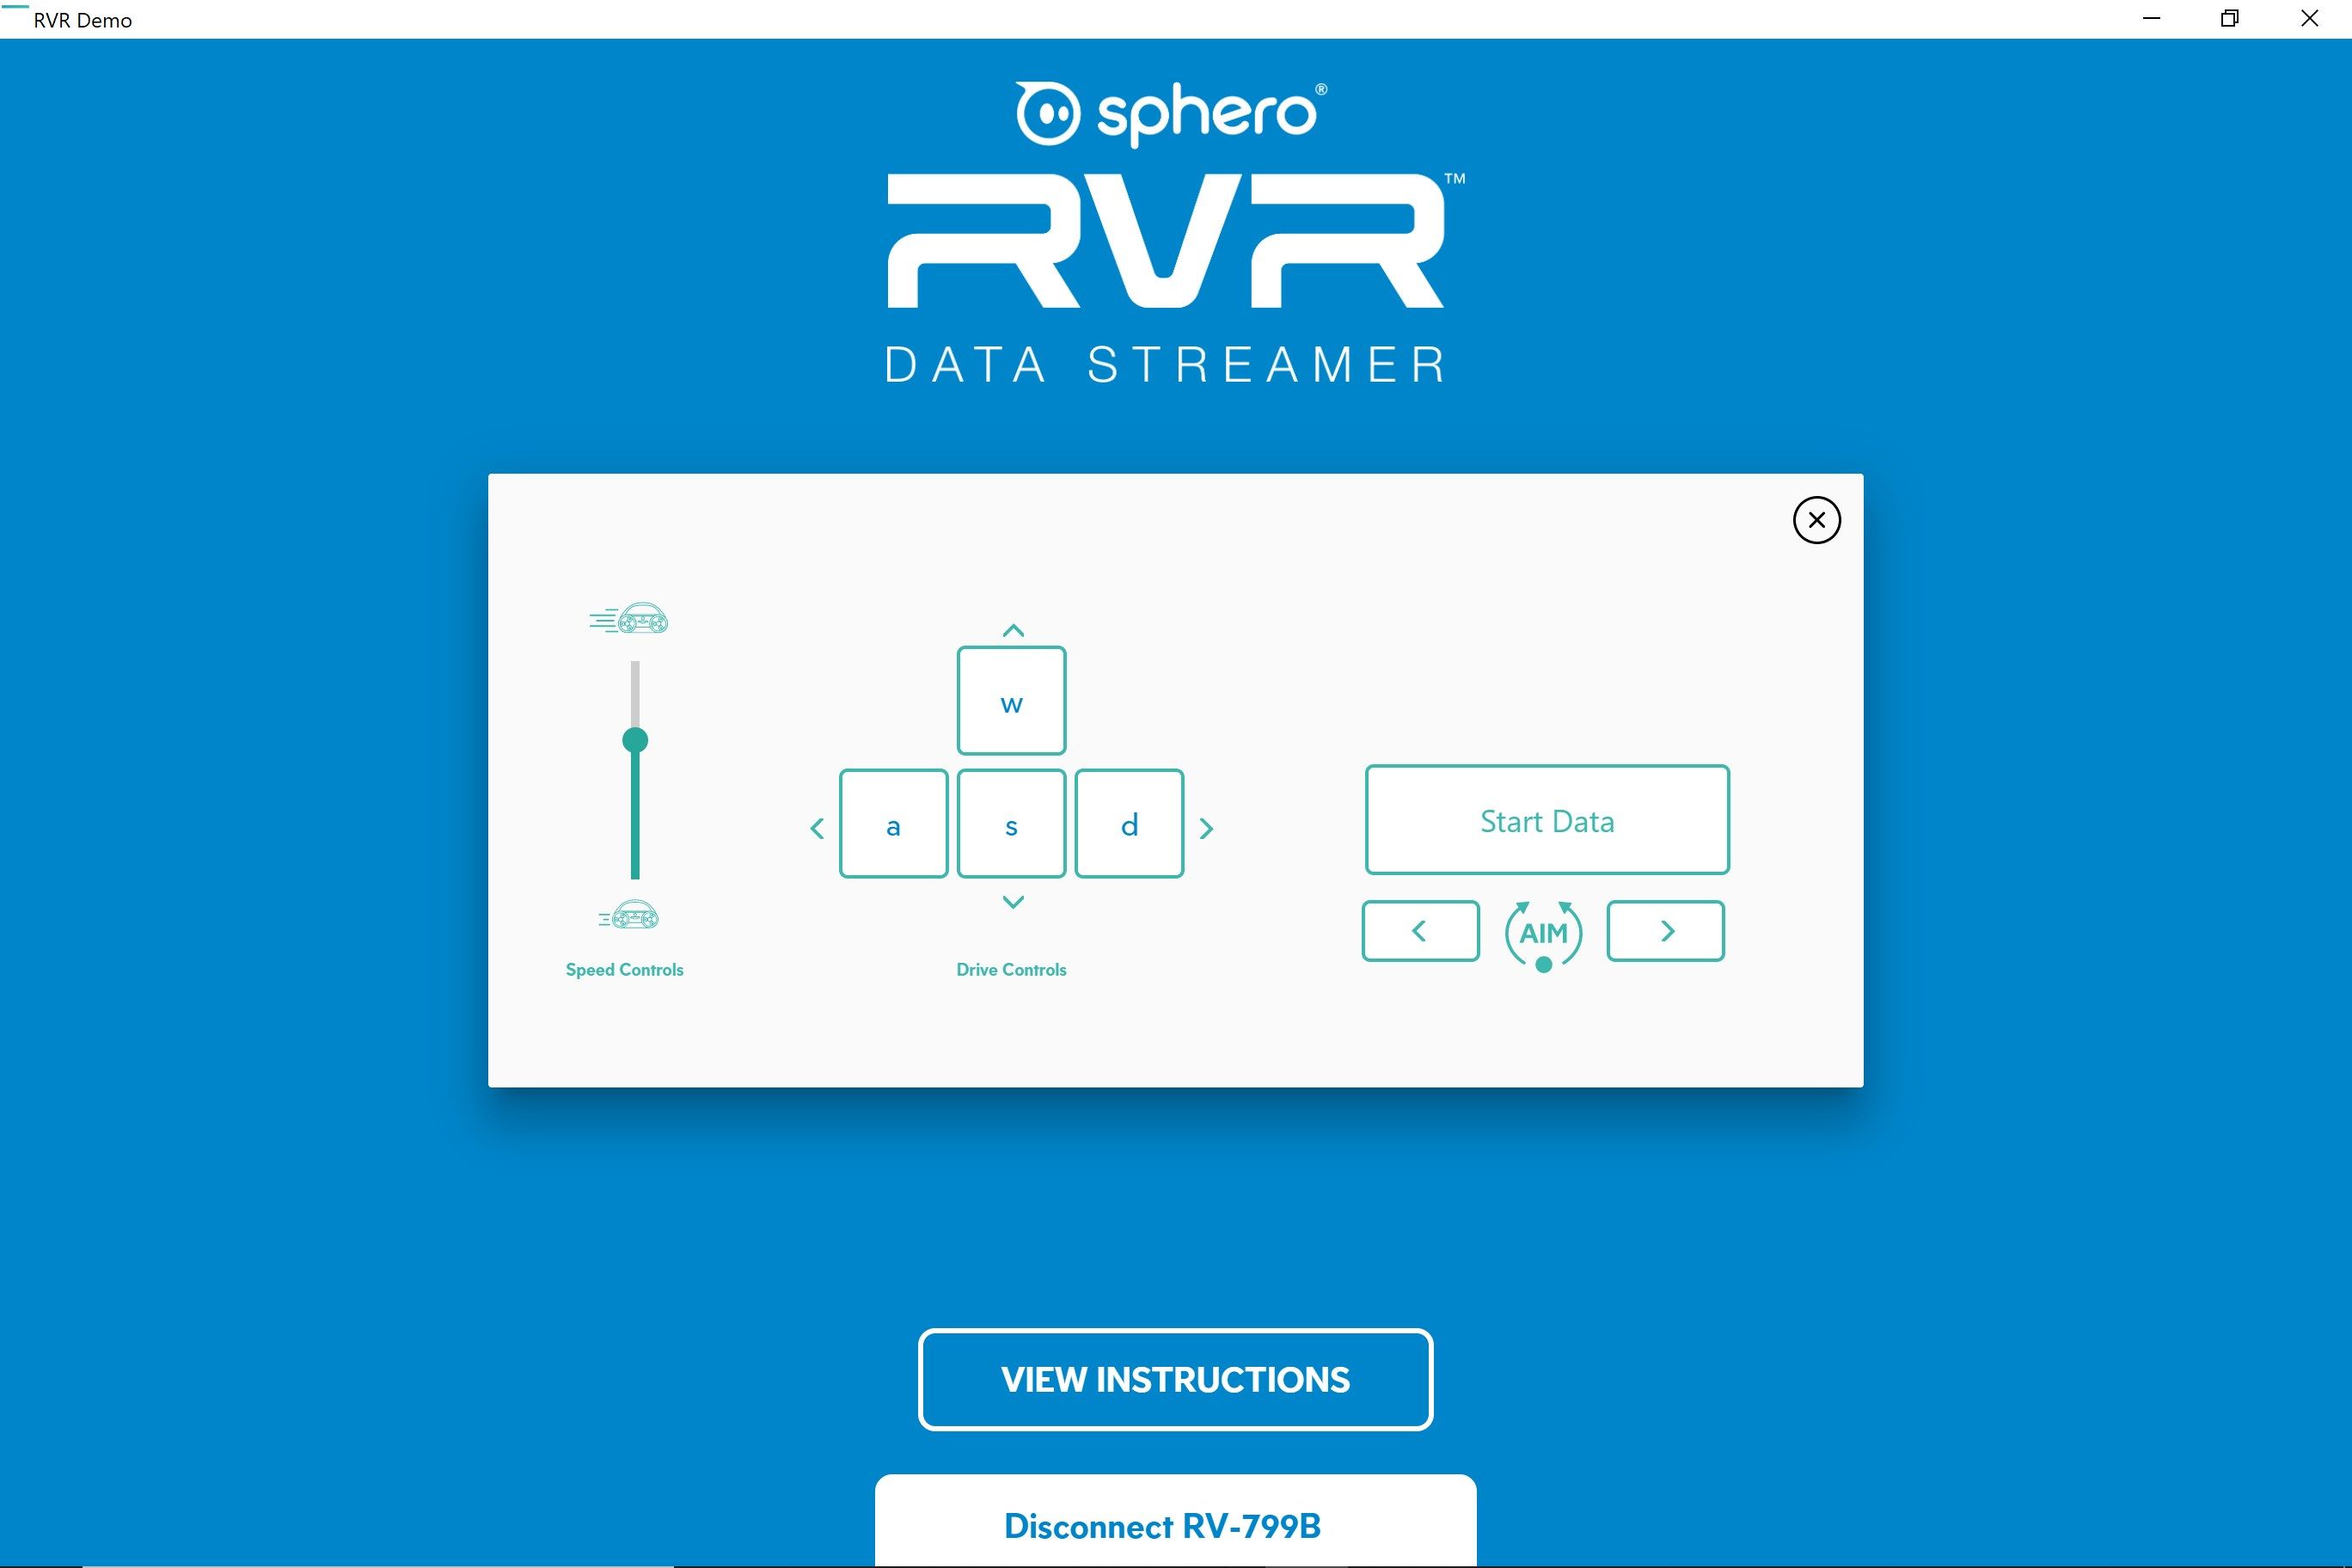 Sphero RVR Data Streamer